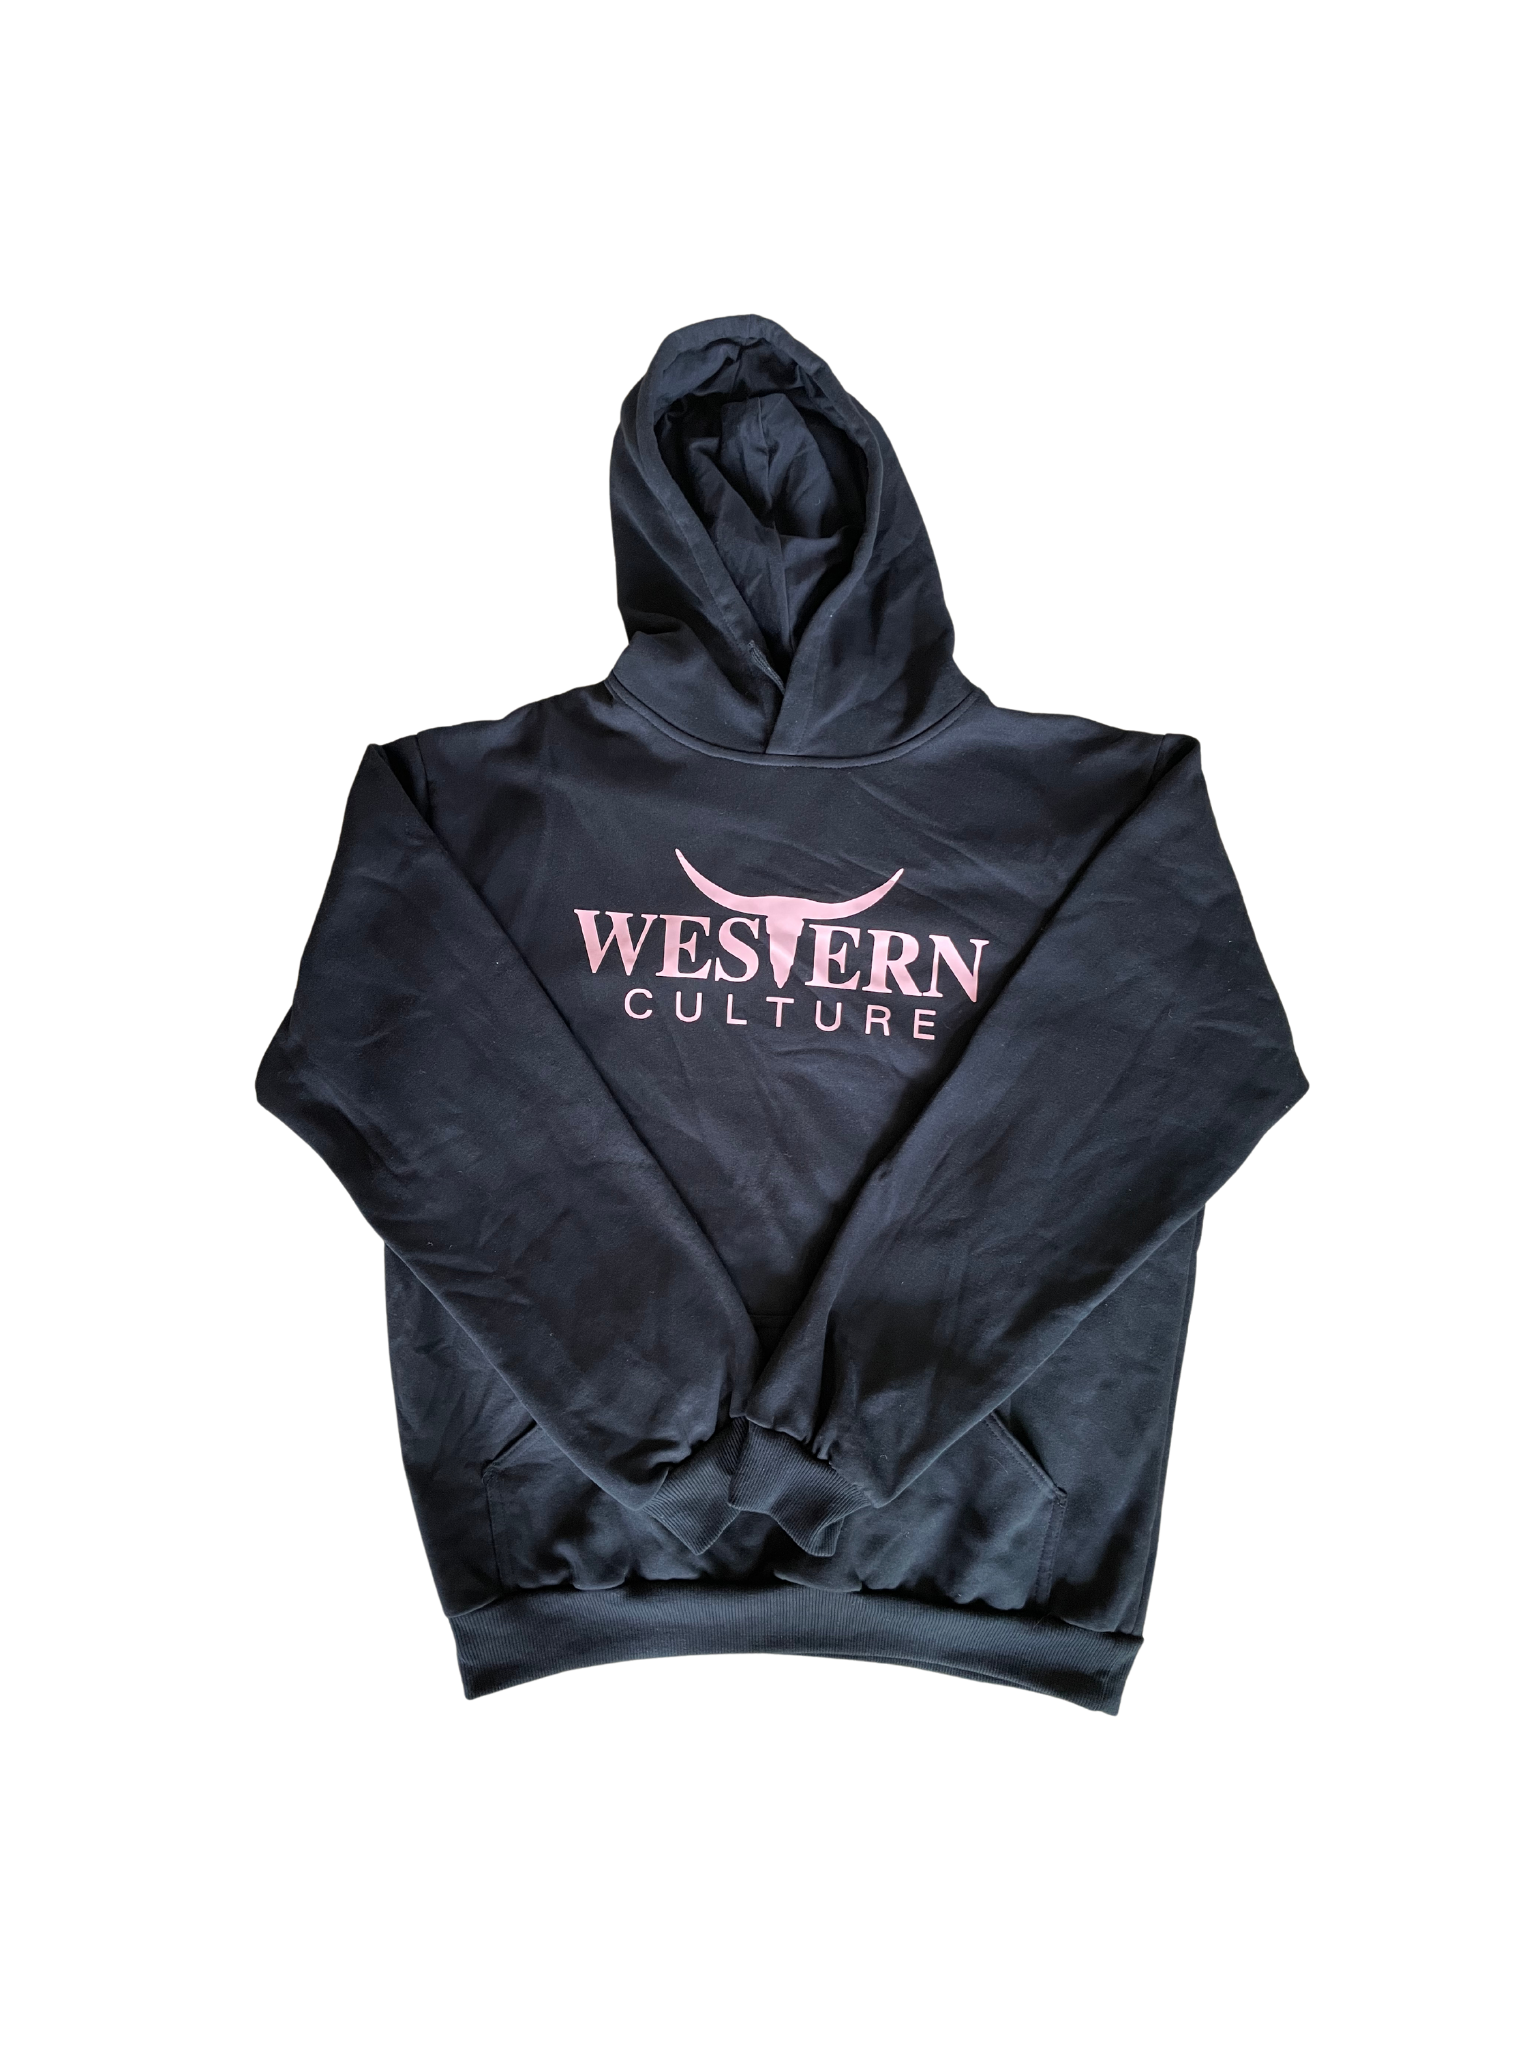 Black hoodie jumper-Western Culture Leather